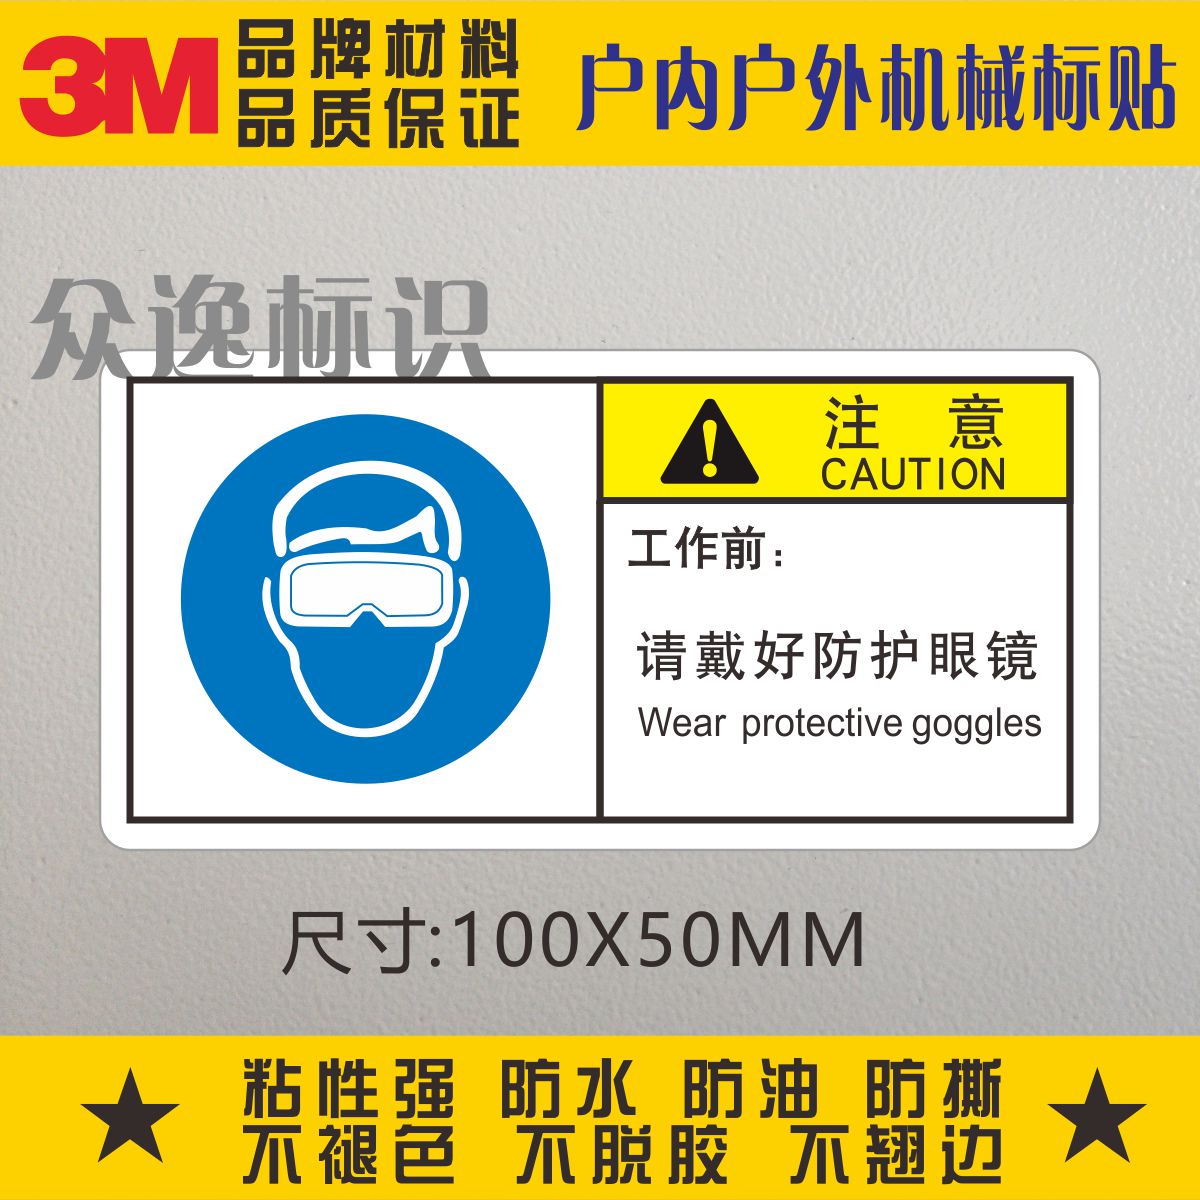 工作前请戴好防护眼镜3M警示标志设备贴纸中英文安全警告标识标贴-封面